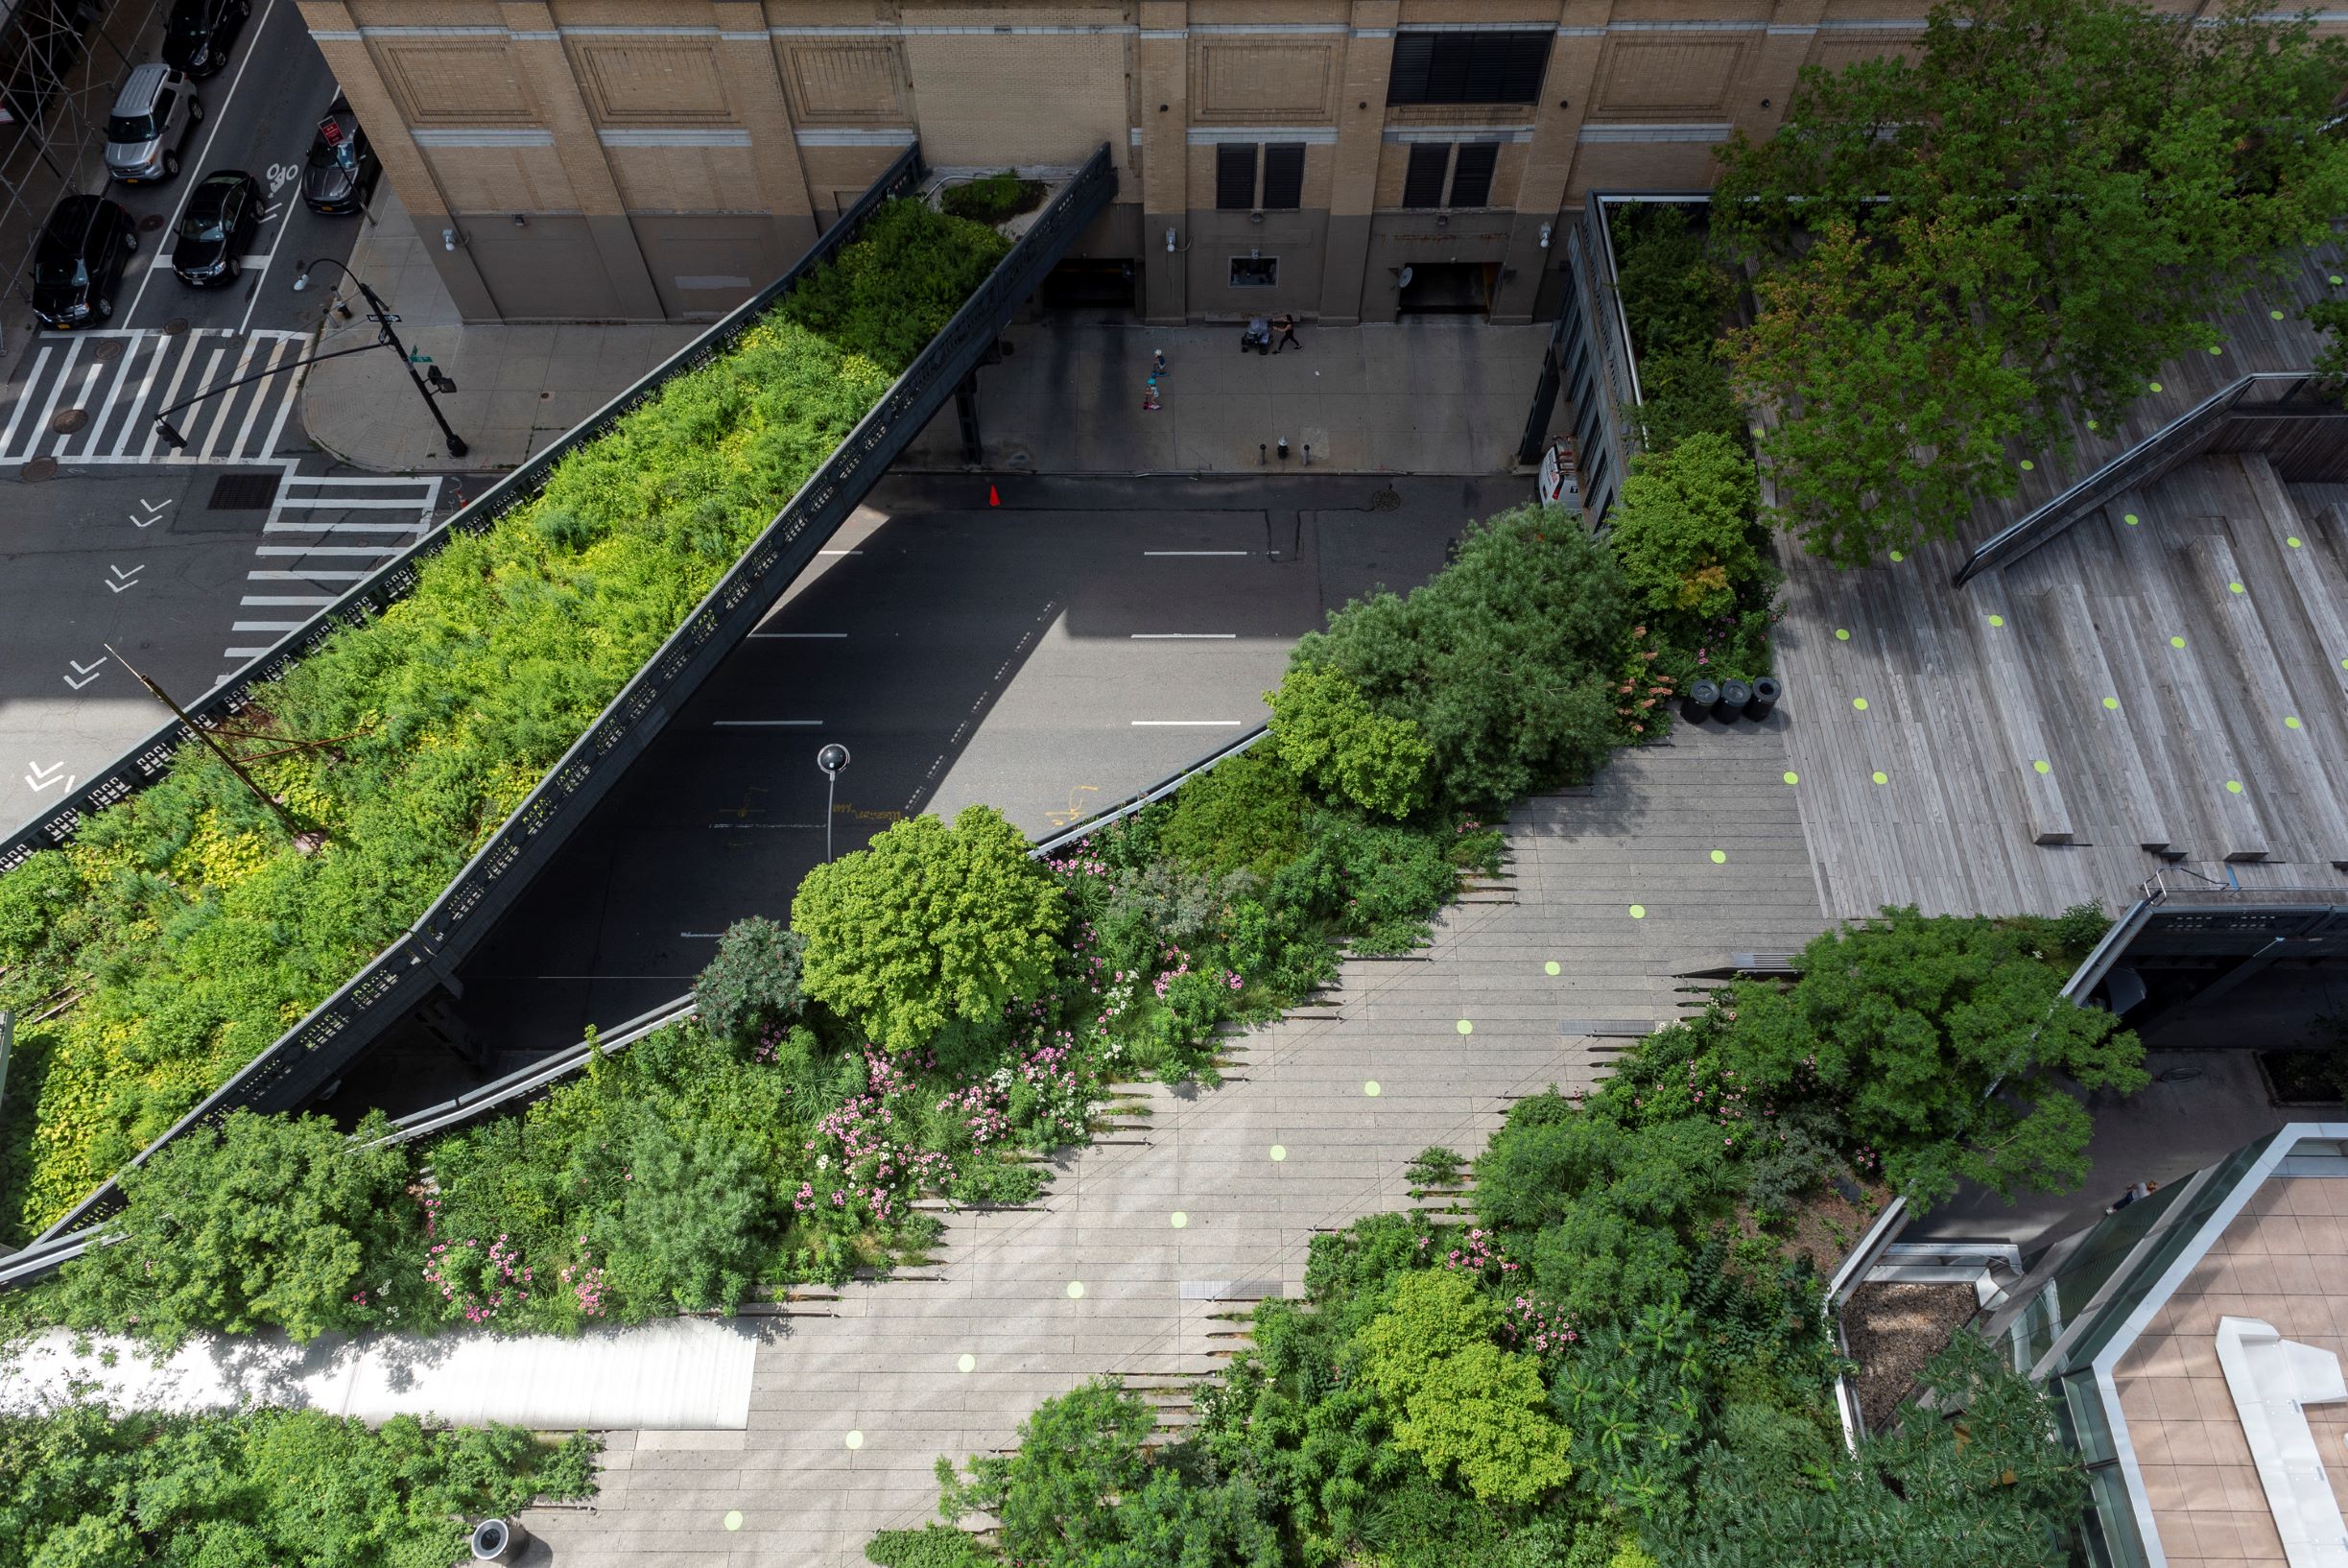 Pentagram's new environmental graphics for the High Line. All photographs courtesy of Pentagram